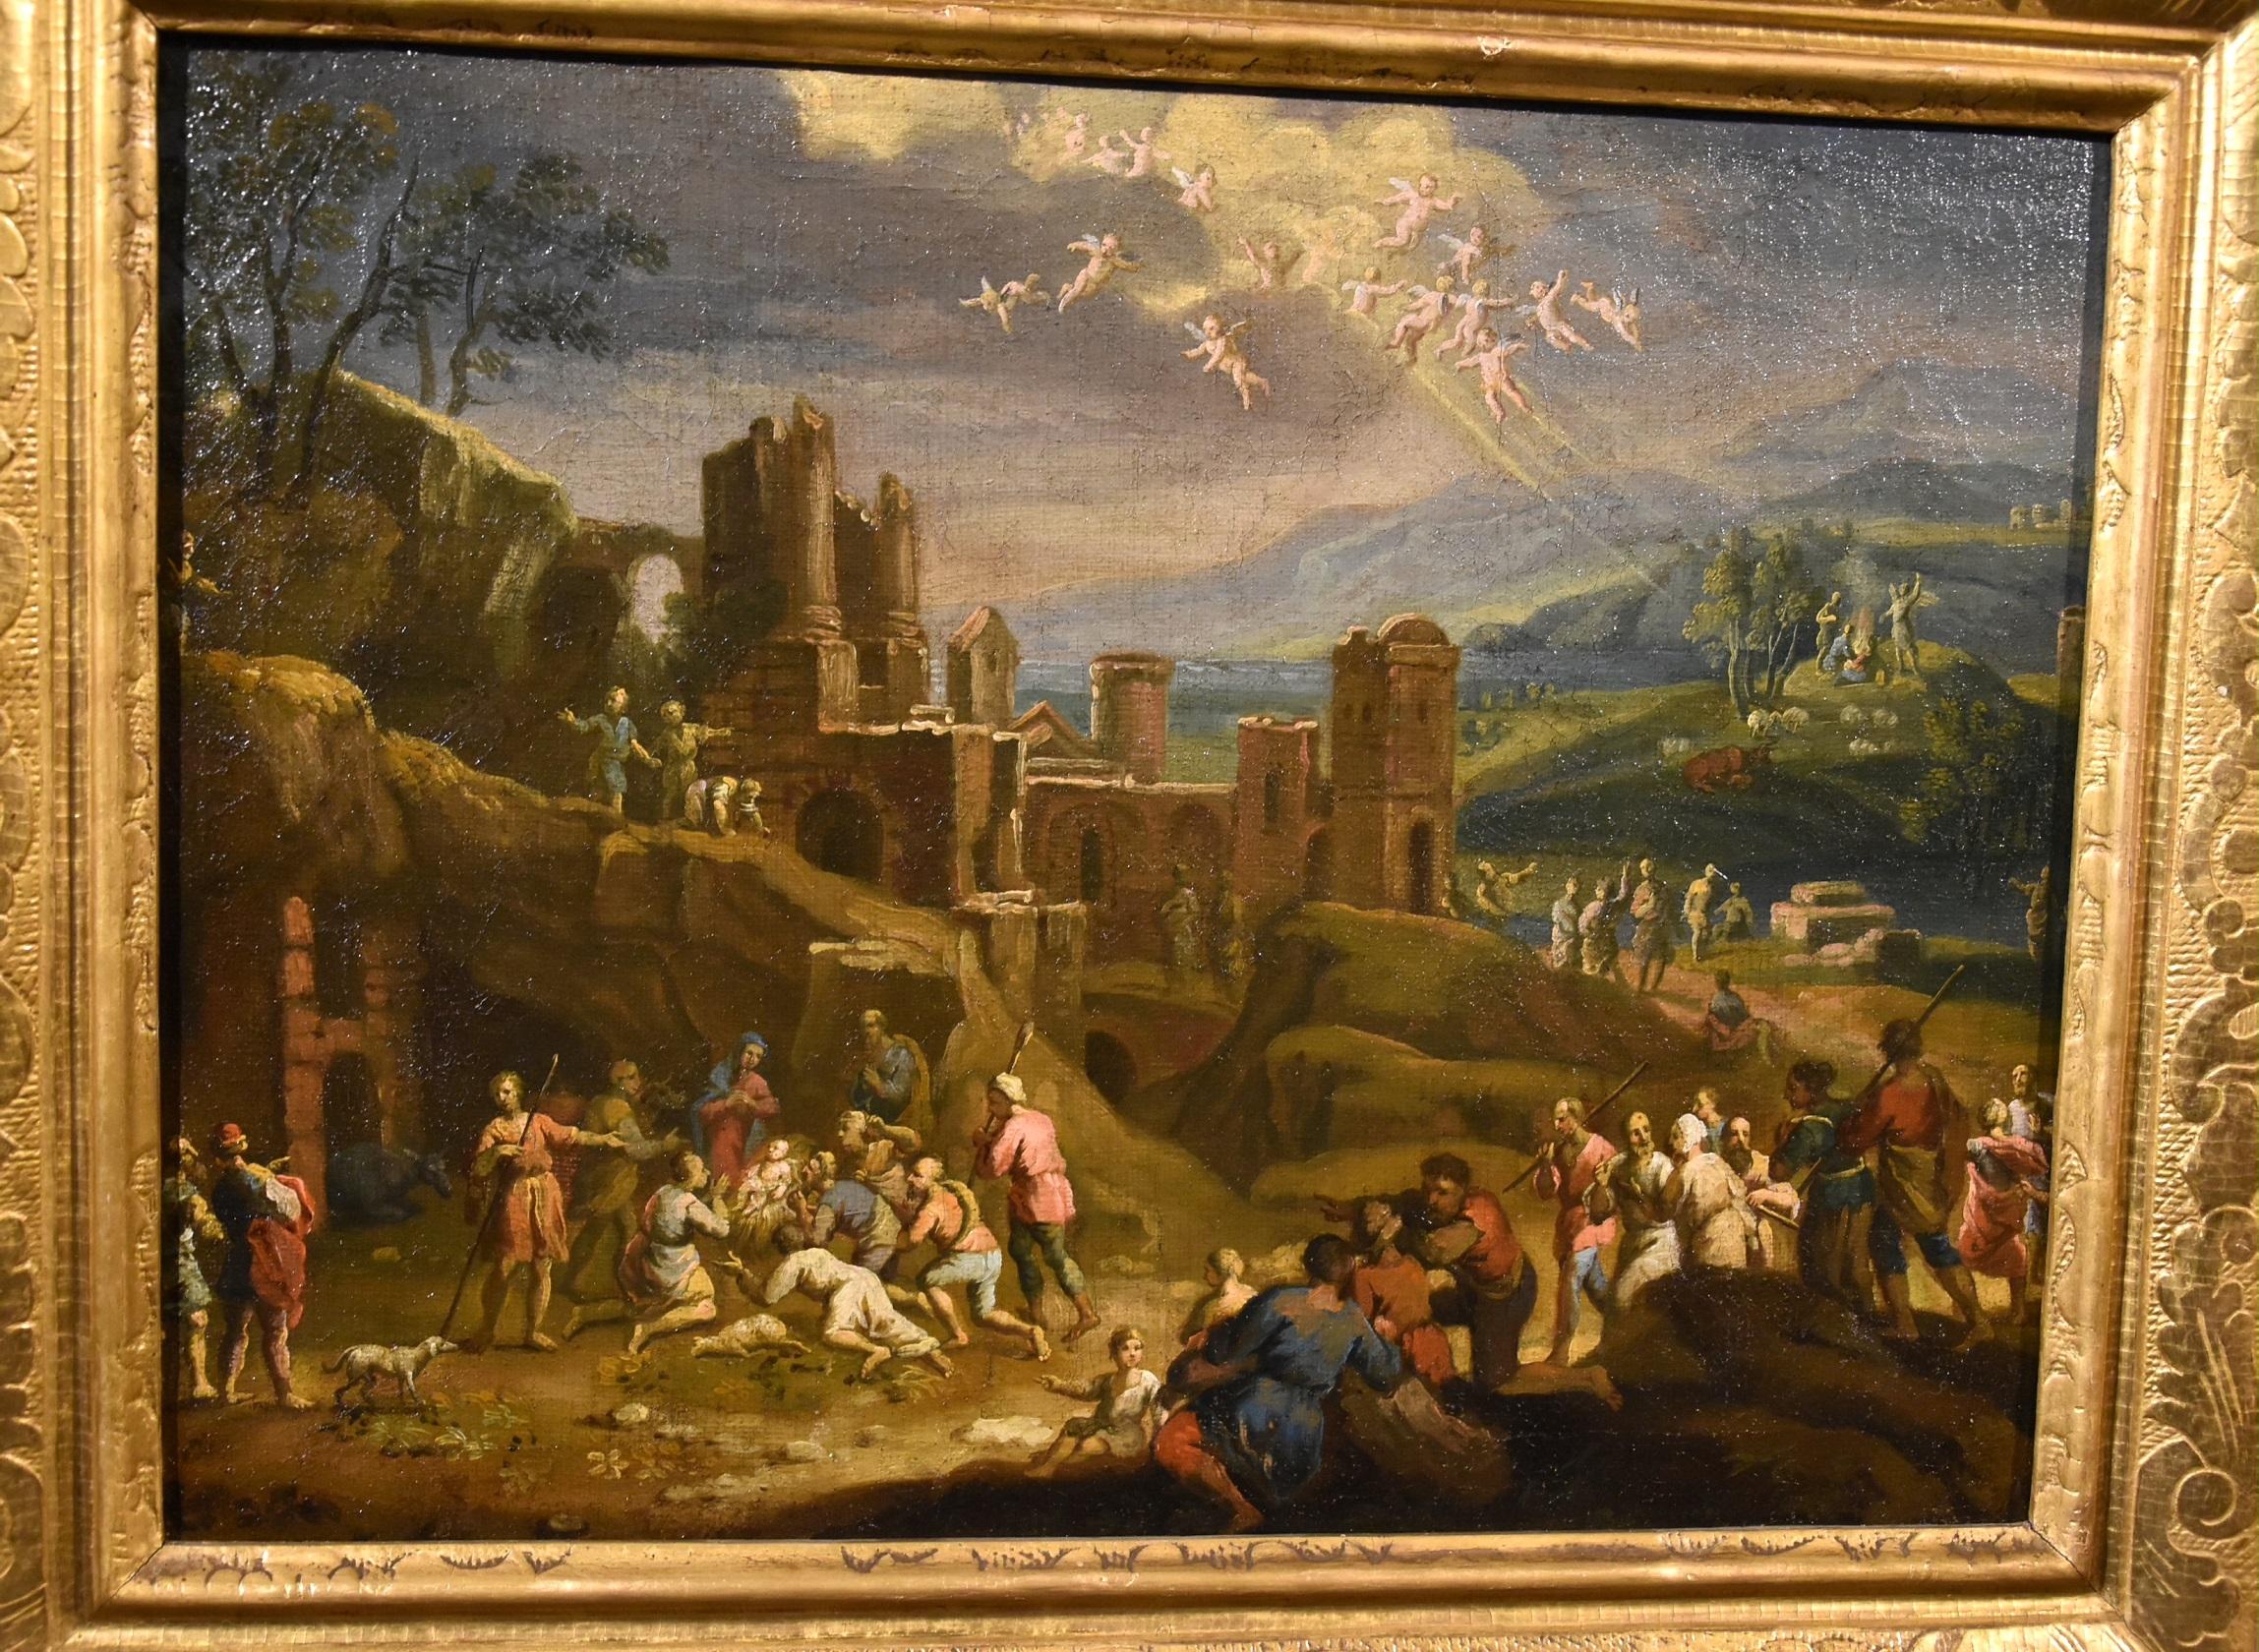 Landschaft, religiöse Malerei, Öl auf Leinwand, alter Meister, 17. Jahrhundert, Italien (Braun), Landscape Painting, von Scipione Compagni, or Compagno (Naples, about 1624 - after 1680)